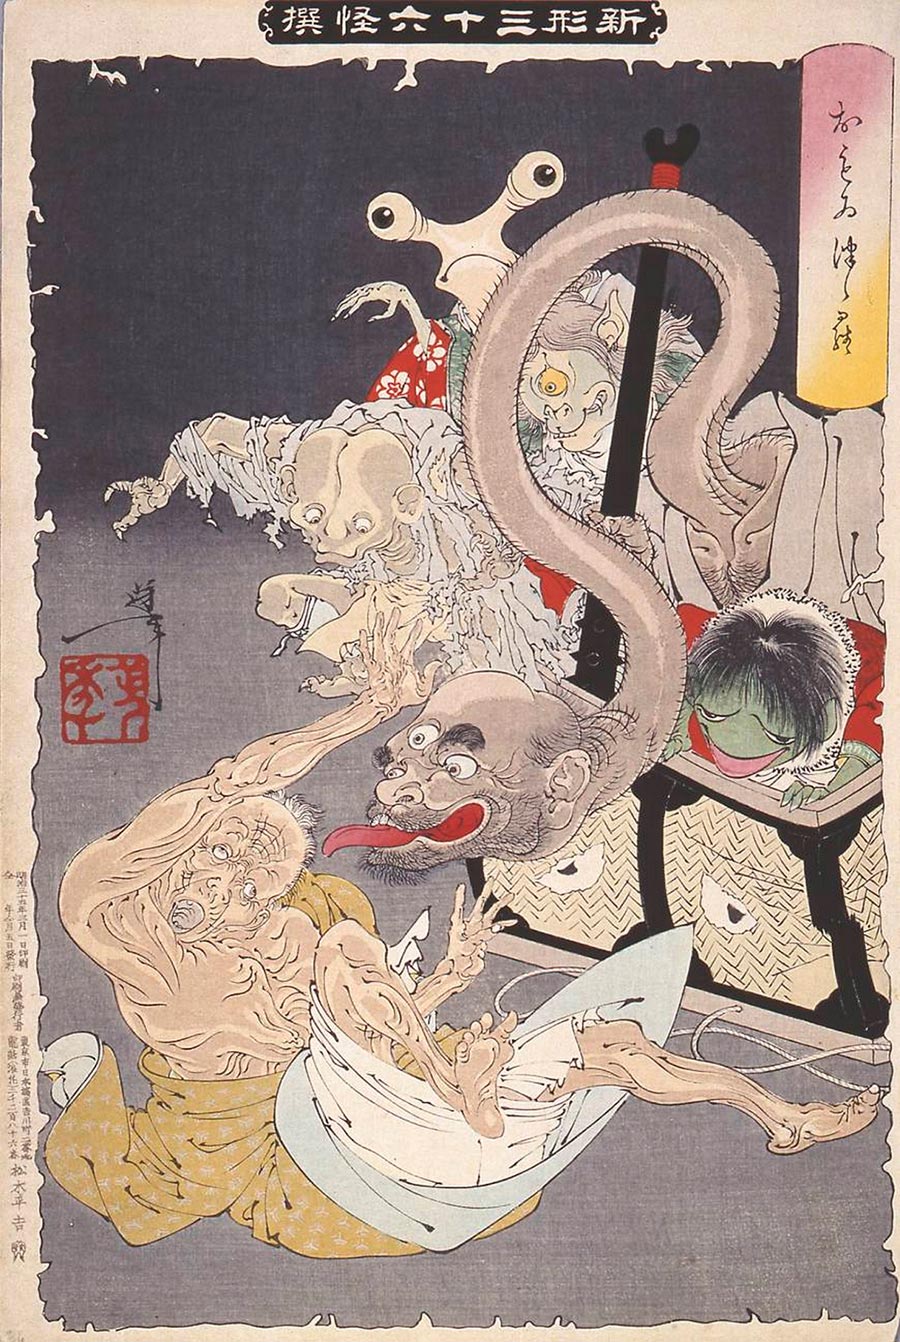 On-line архив японских гравюр, созданных с 1700-х годов до наших дней Ёситоси Цукиока